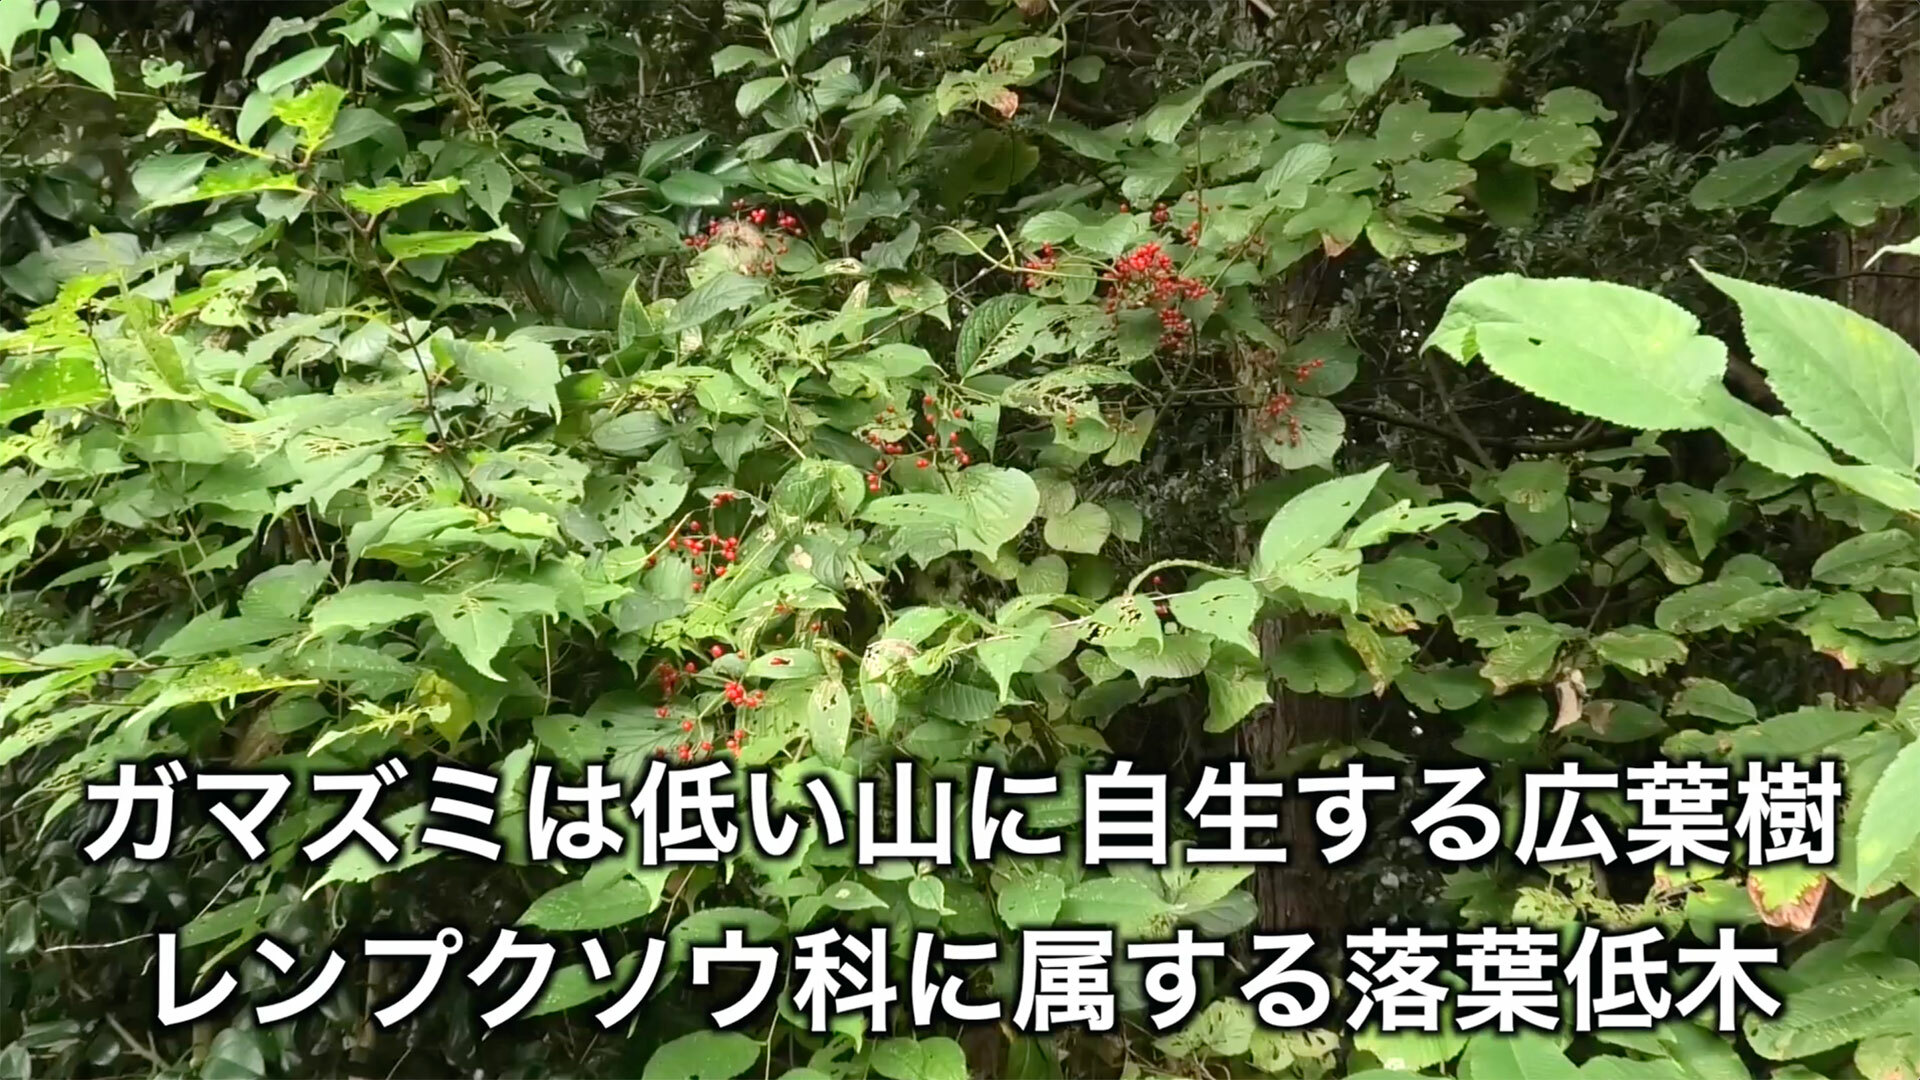 写真の中央に写っている赤い小さな実がついた木がガマズミの木です